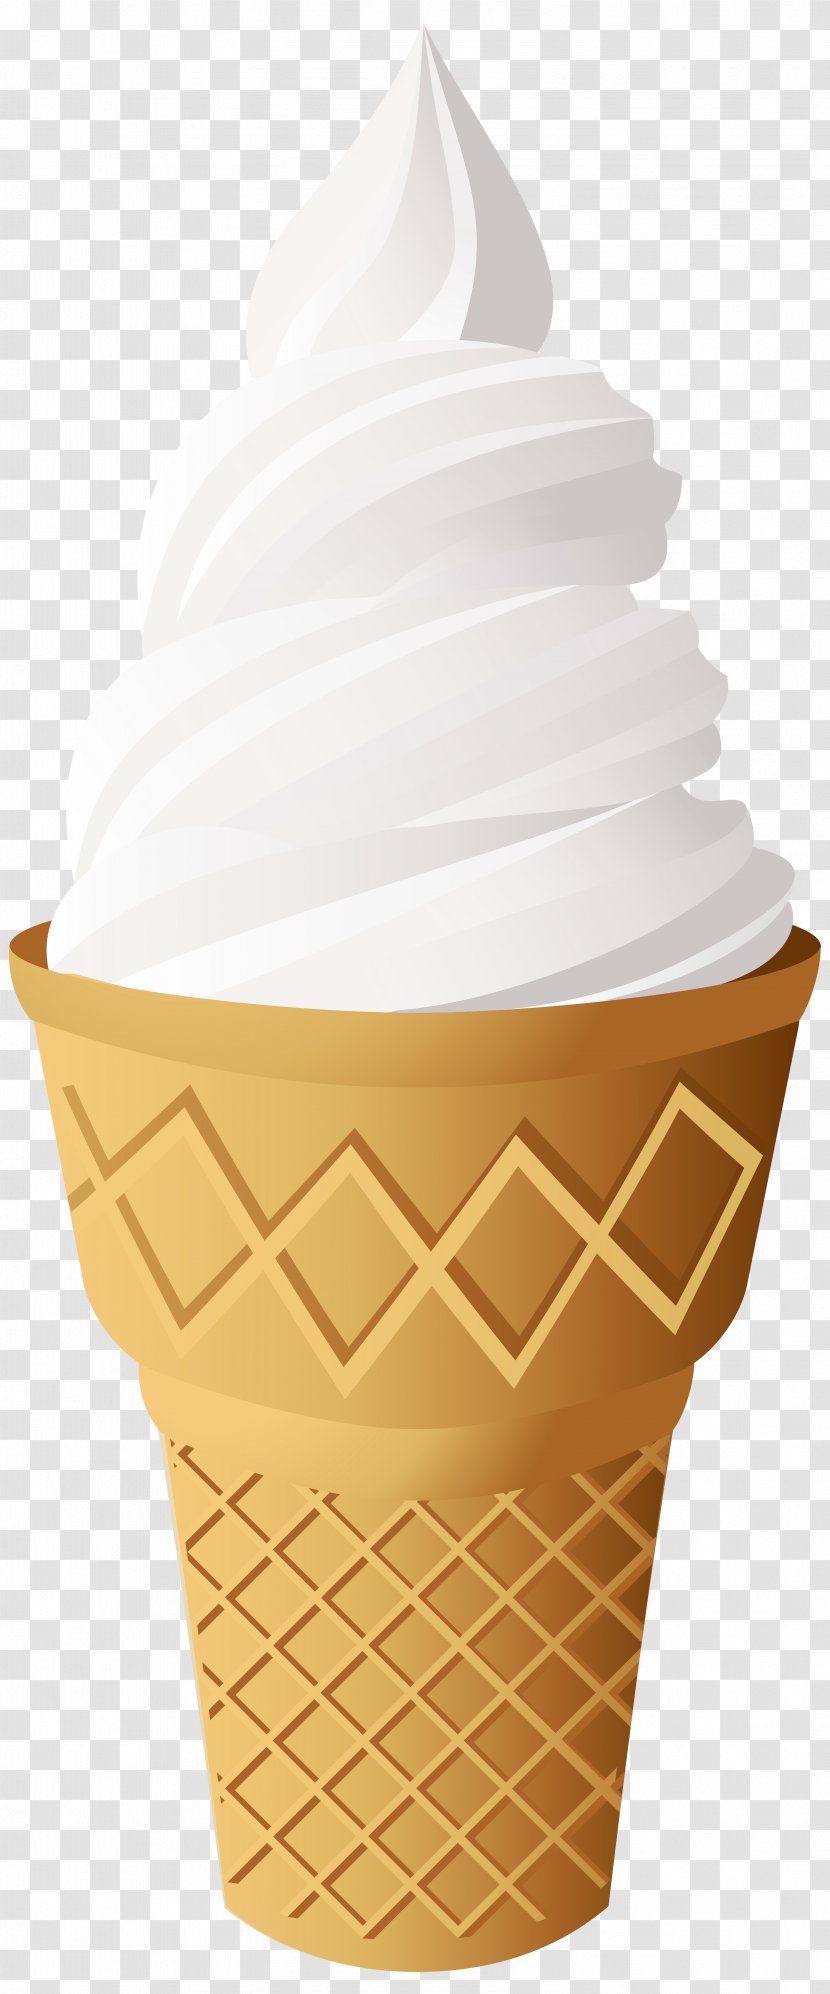 Ice Cream Cones Sundae Neapolitan - Cone Transparent PNG